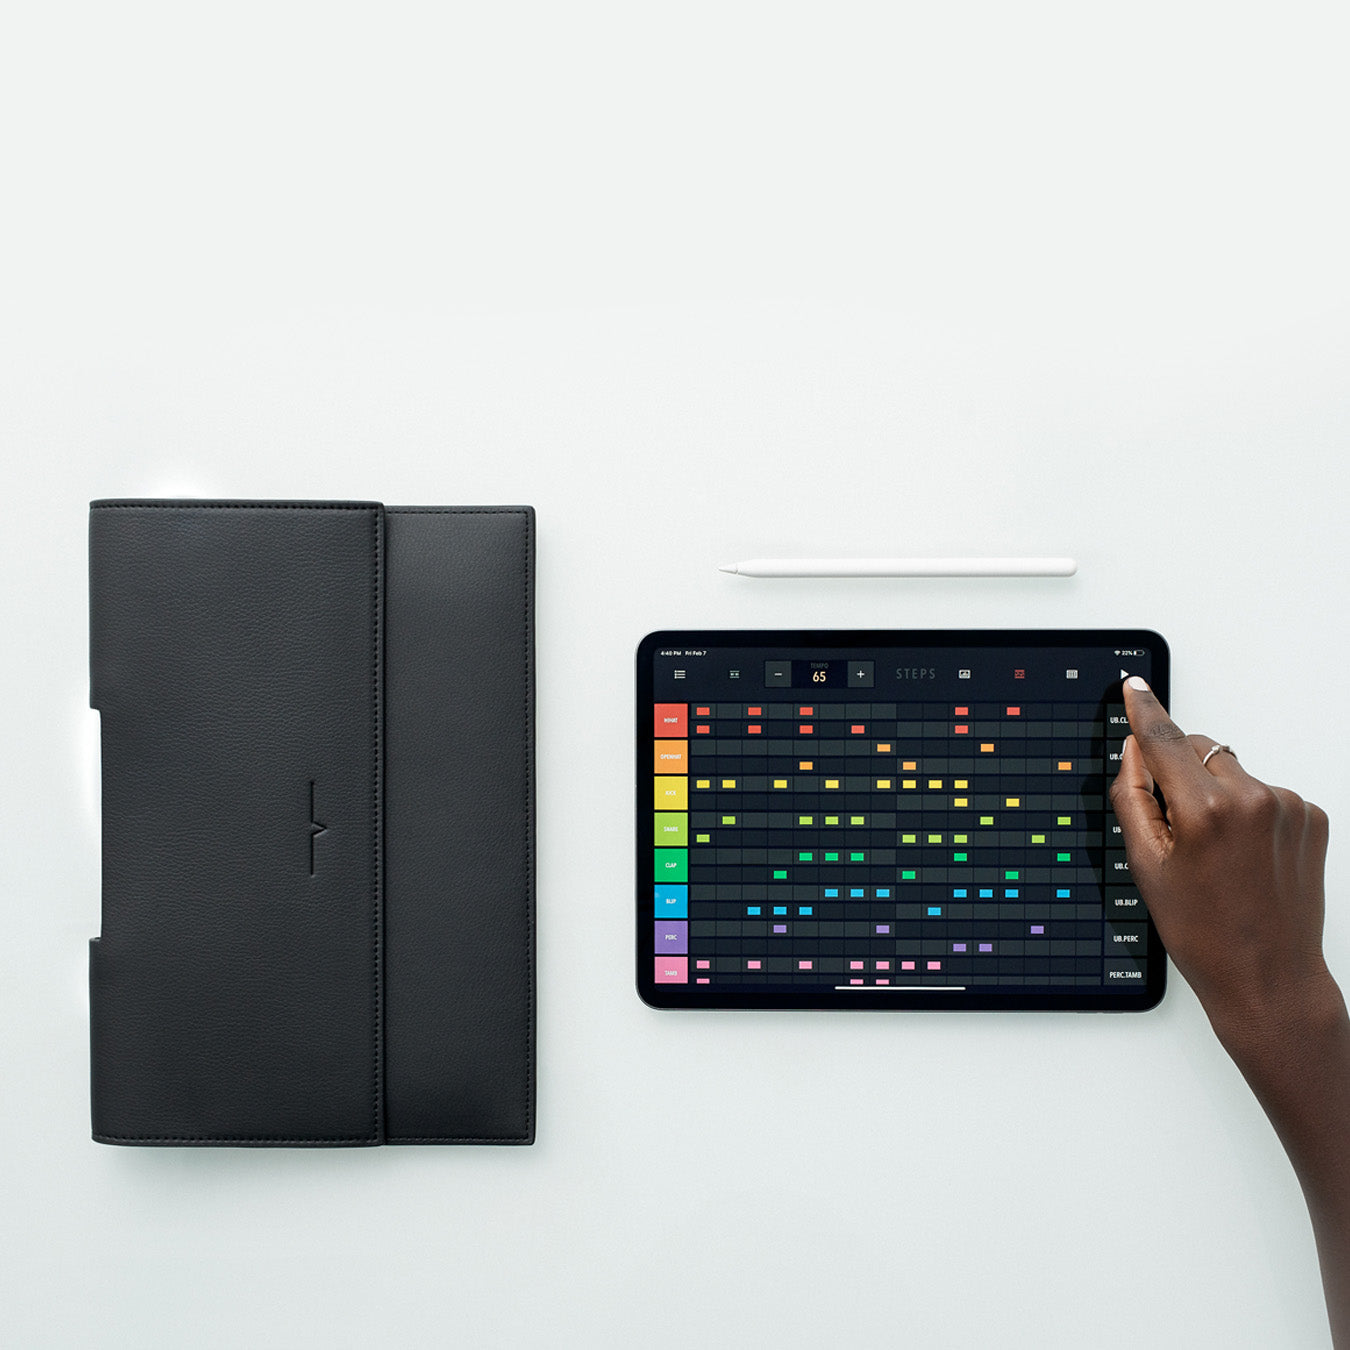 The iPad Portfolio 11-inch - Sample Sale in Technik in Black image 5